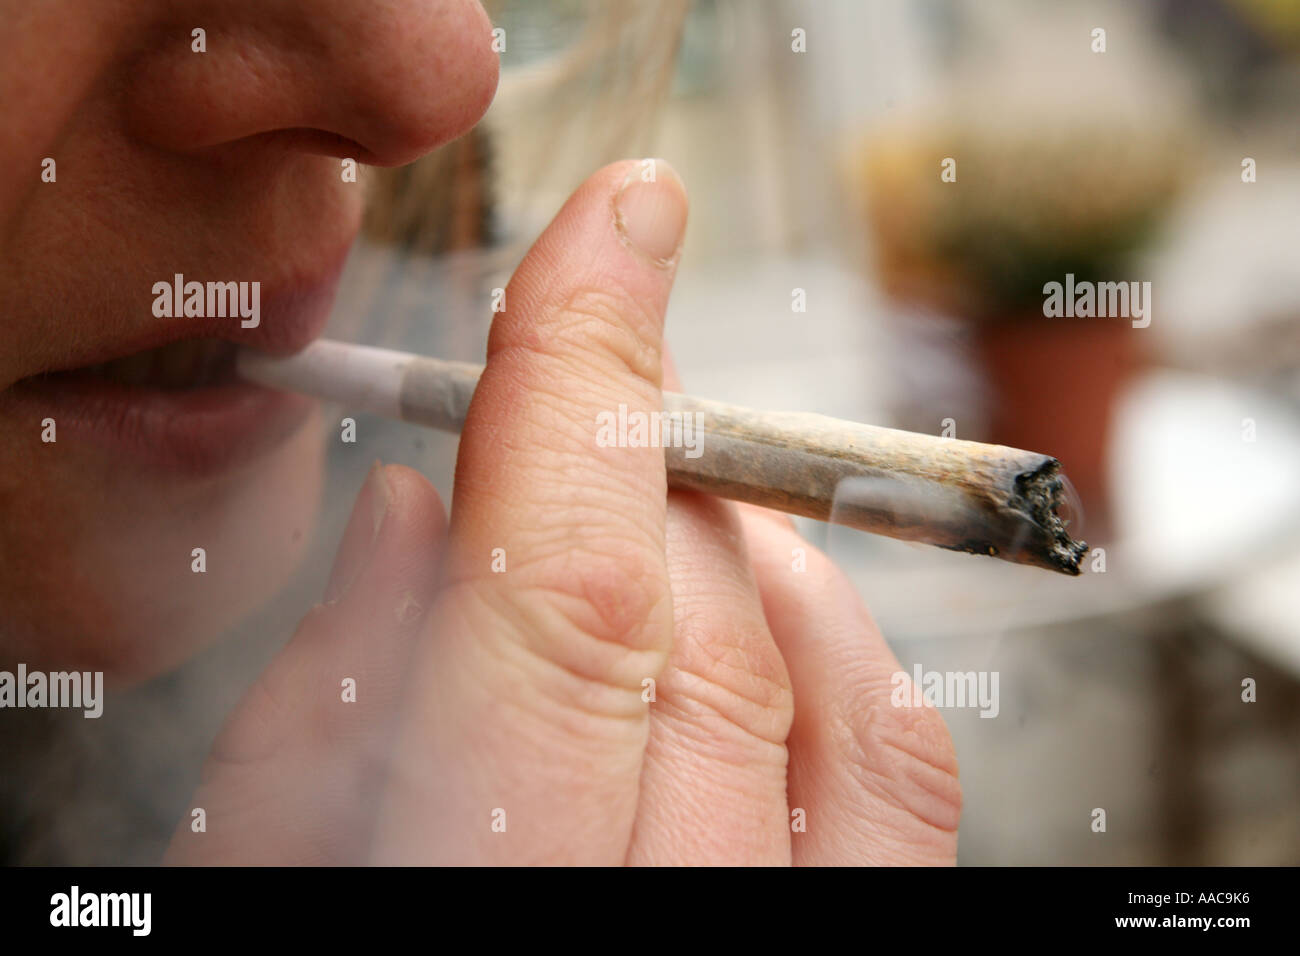 Giovane donna fumare marijuana in un coffee shop in Olanda Foto Stock